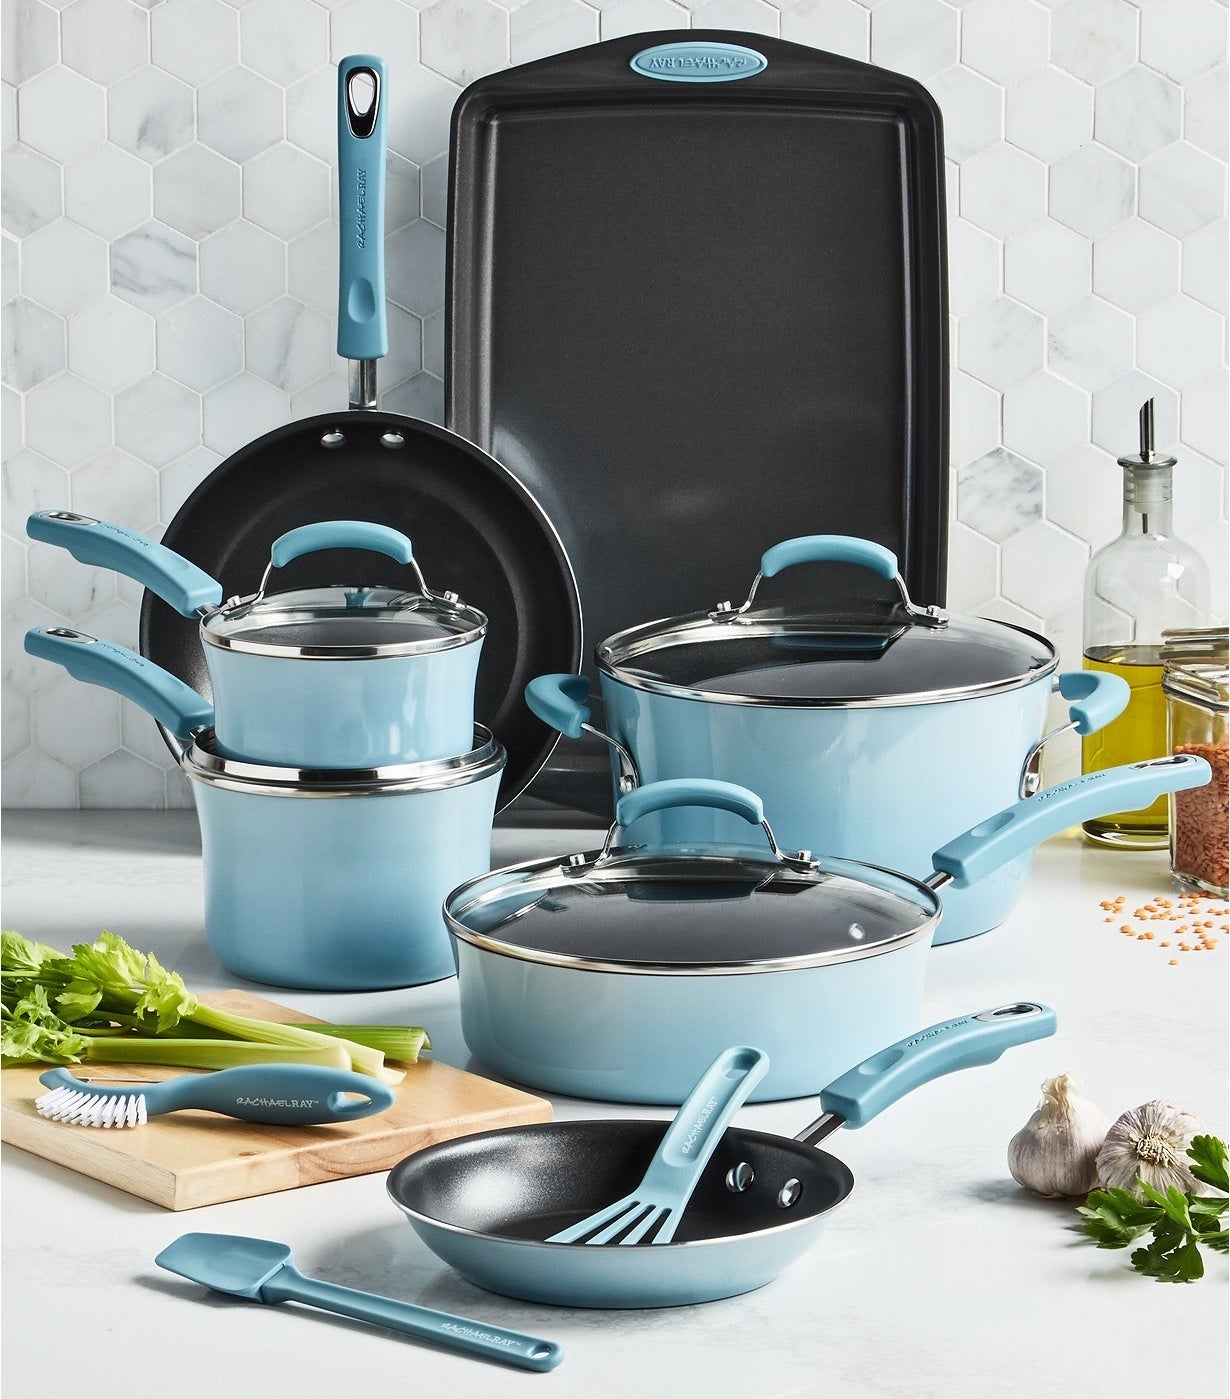 The light blue cookware set